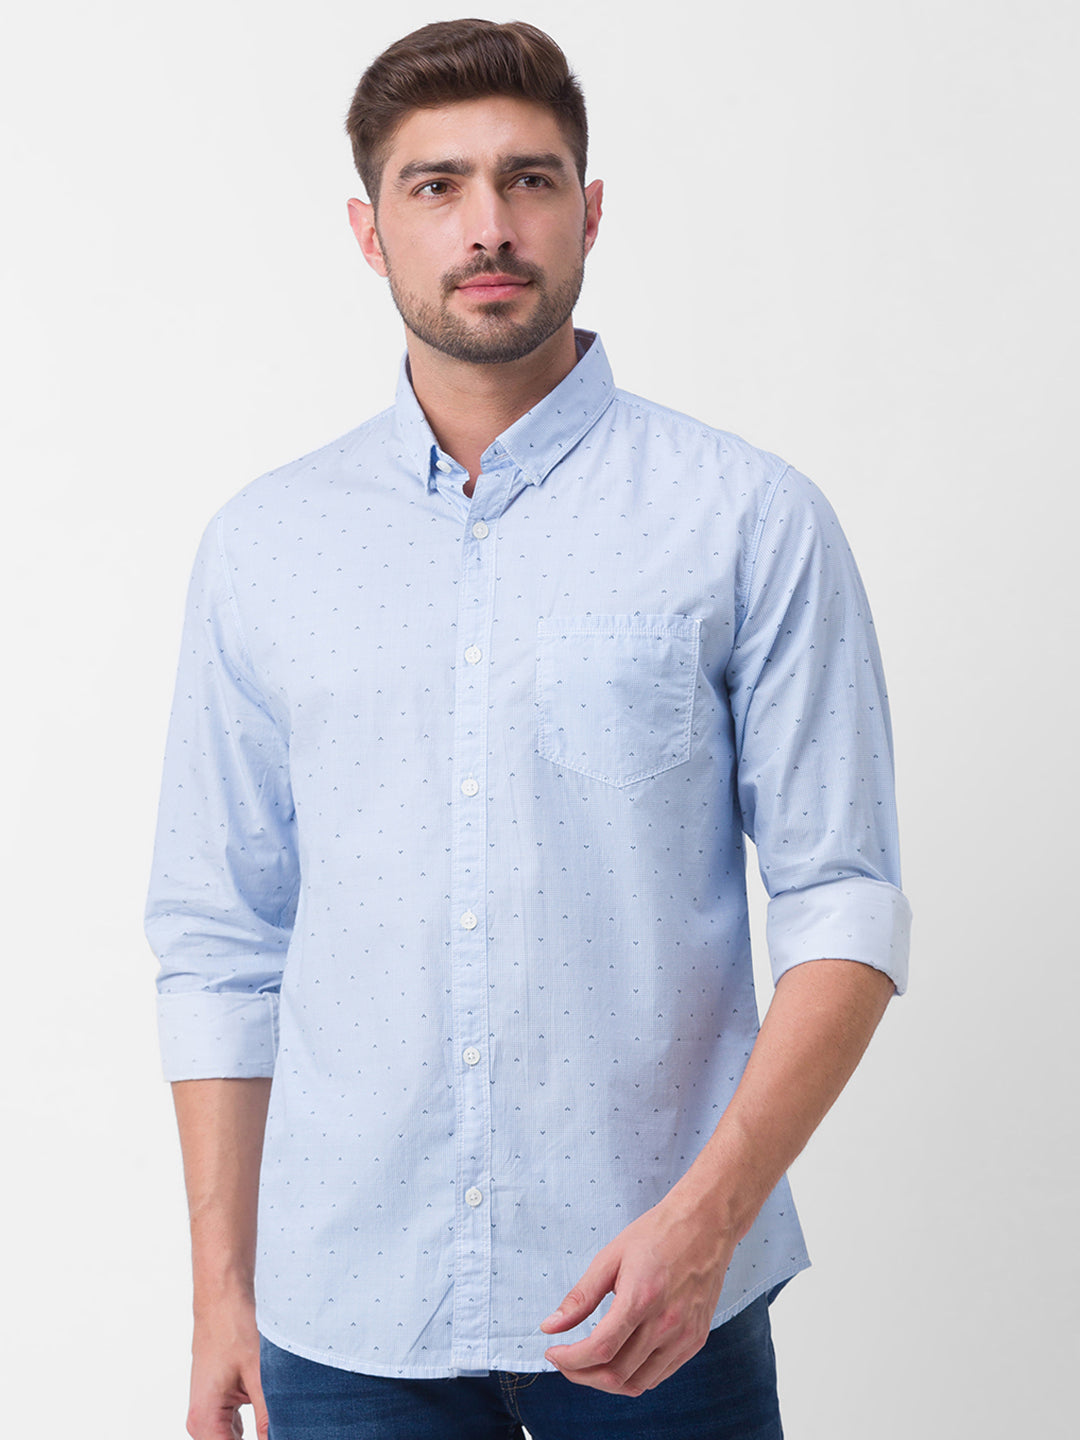 Spykar Sky Blue Cotton Full Sleeve Printed Shirt For Men